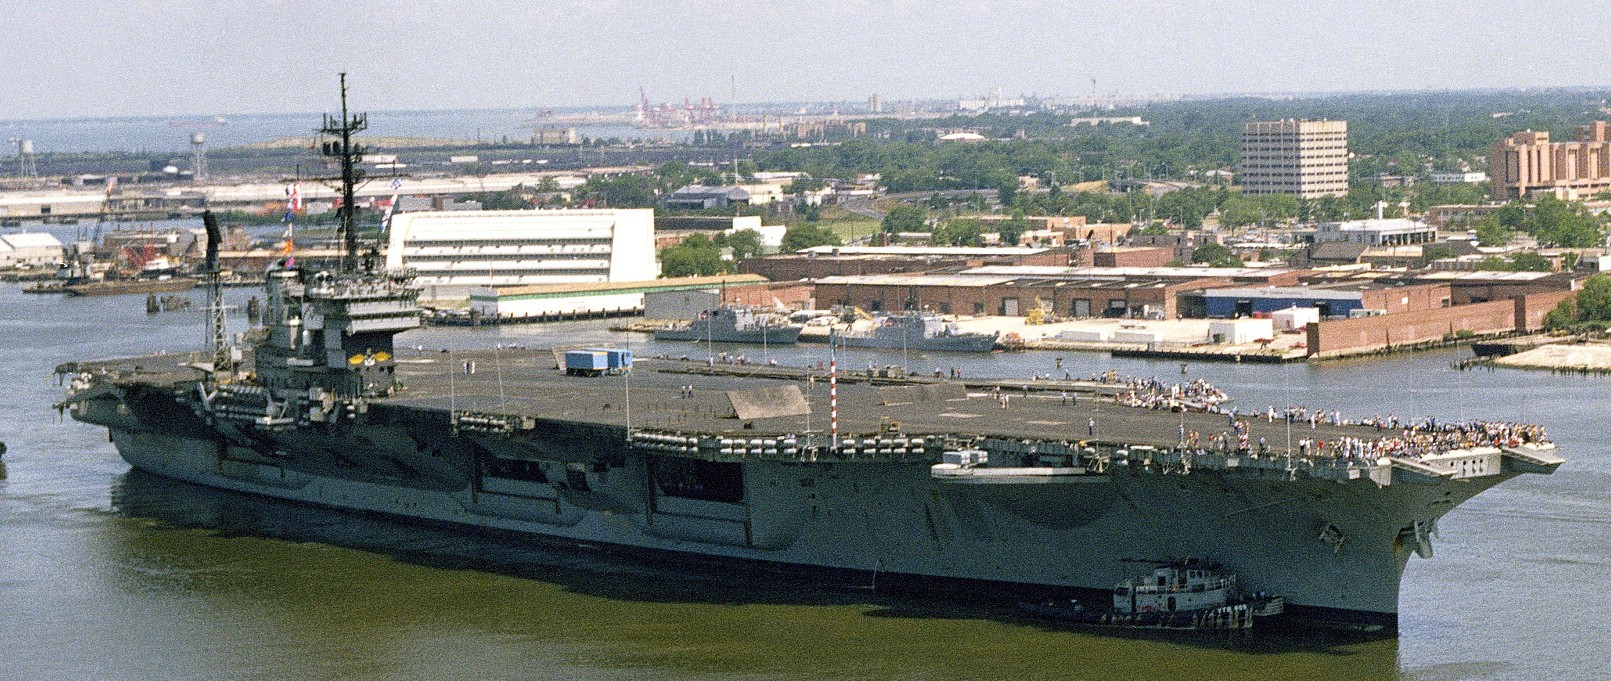 cv-66 uss america kitty hawk class aircraft carrier us navy 77